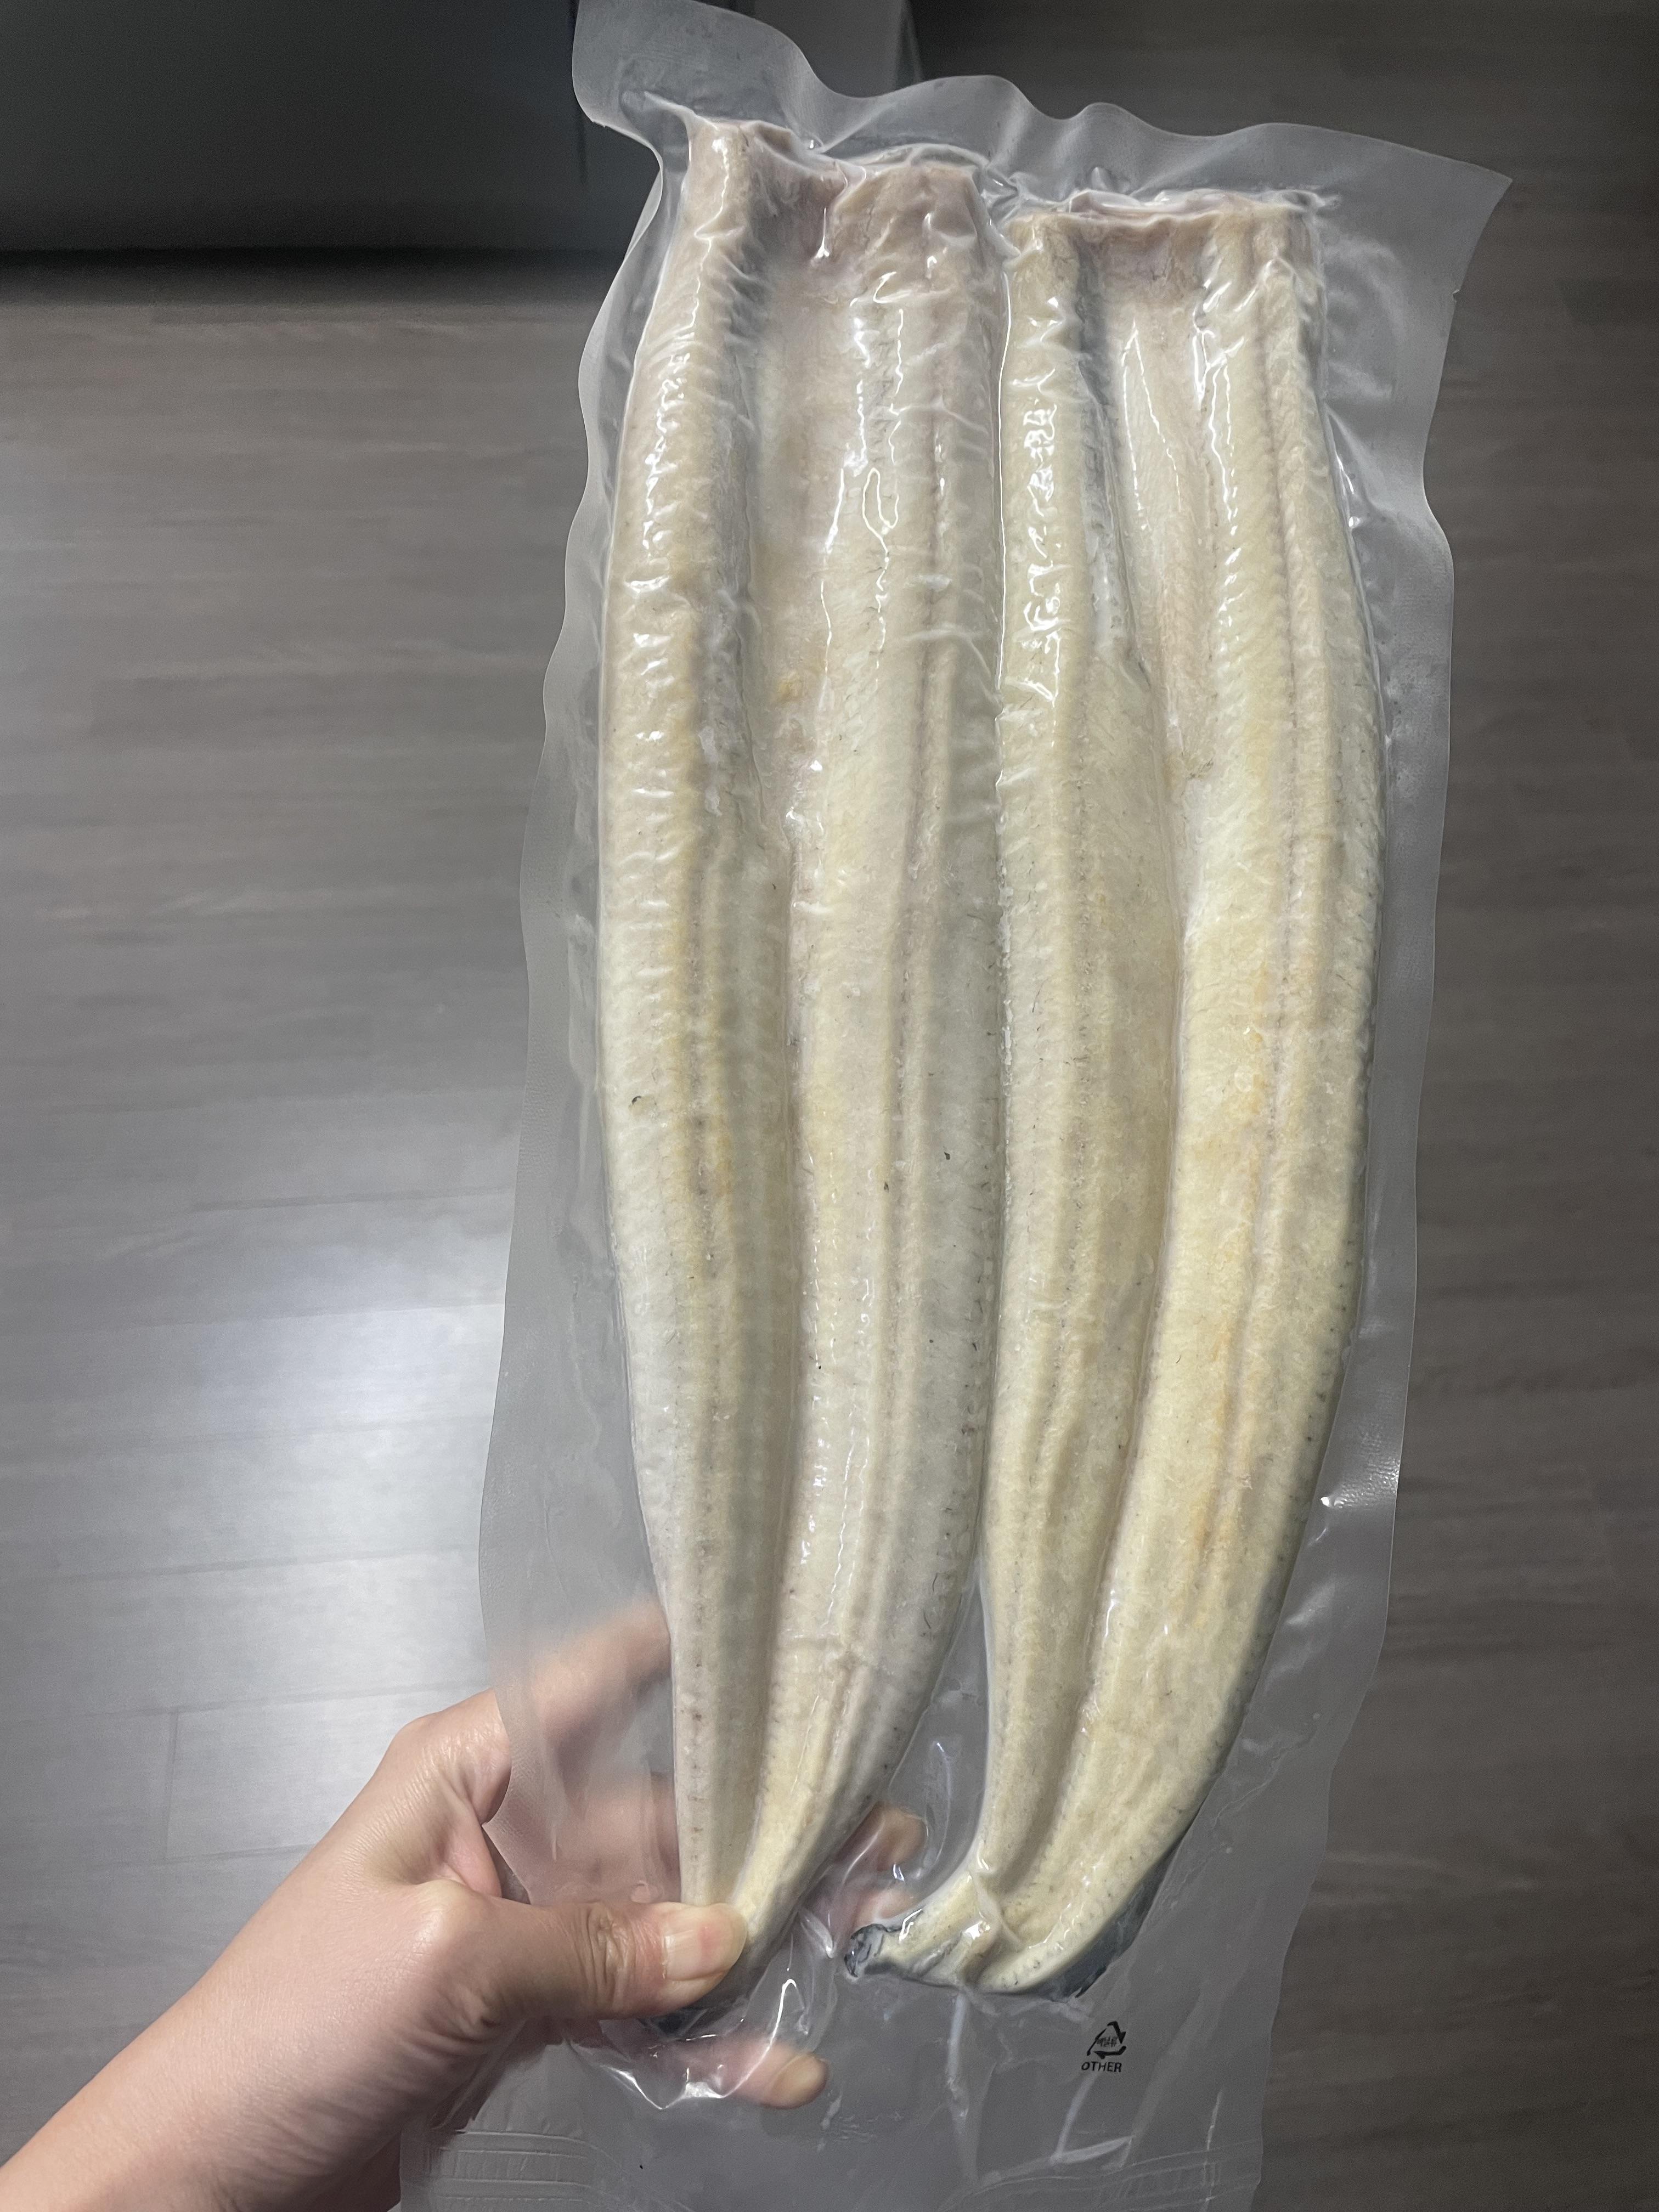 (기찬명품장어) 자포니카 기찬 명품장어 1kg (손질장어/초벌장어)